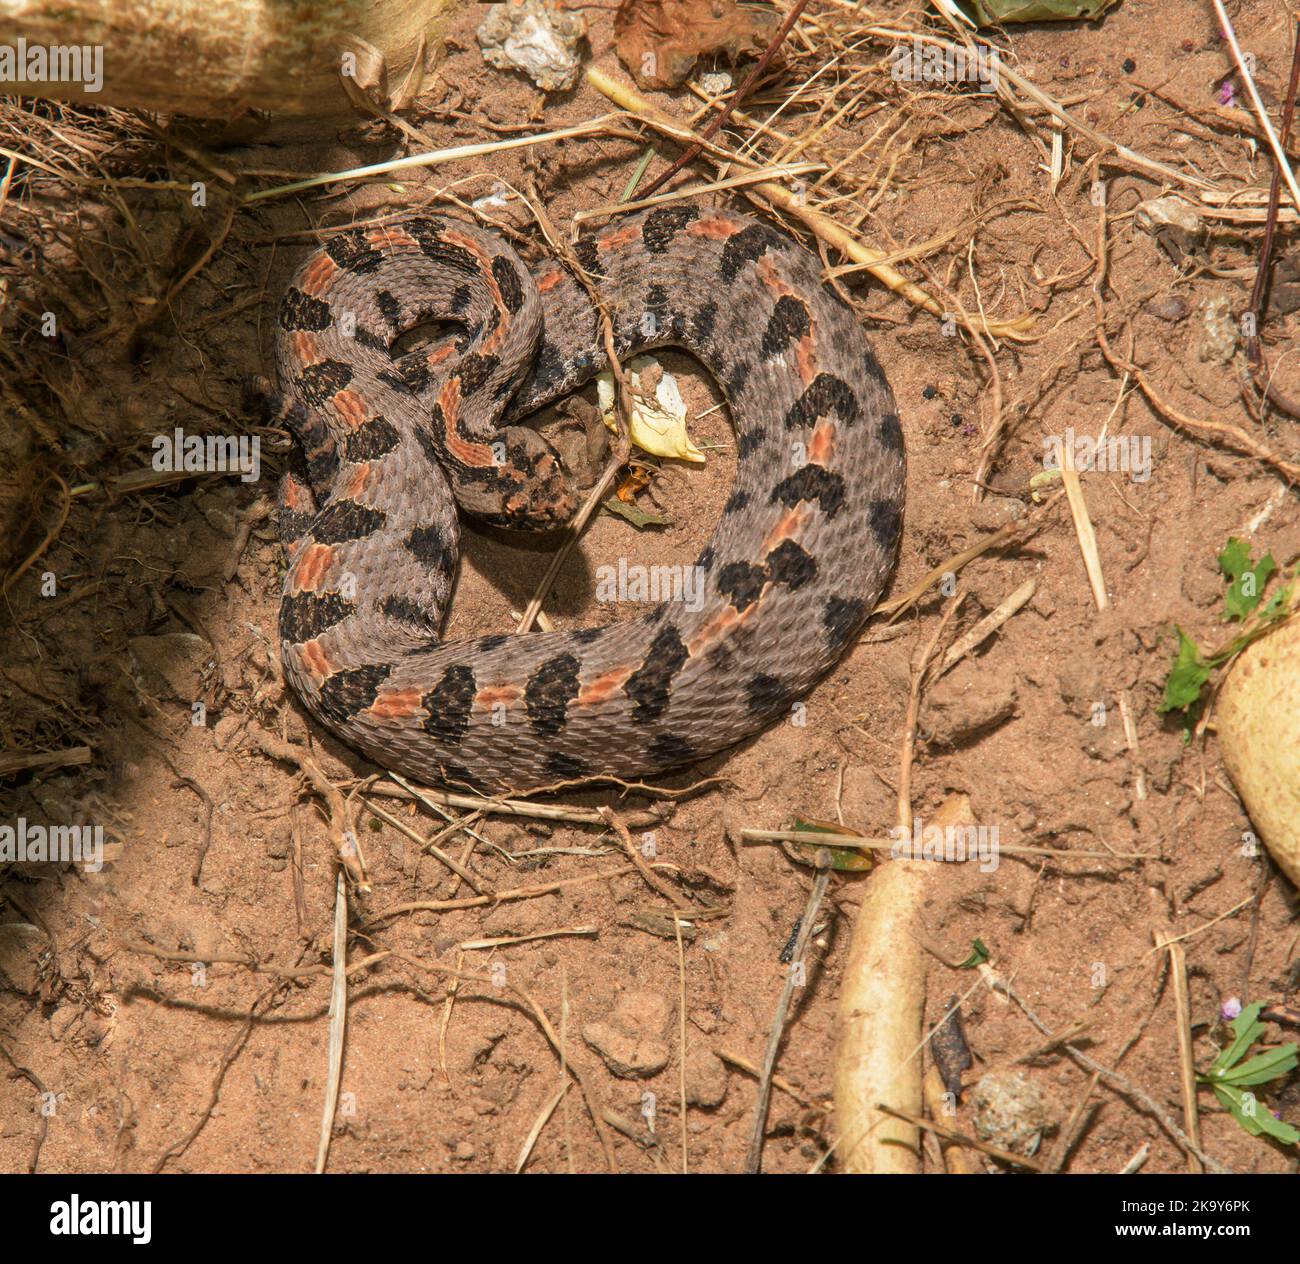 Le serpent pygmée occidental s'enroule dans une posture défensive, camouflé sur le sol près d'un endroit ombragé Banque D'Images